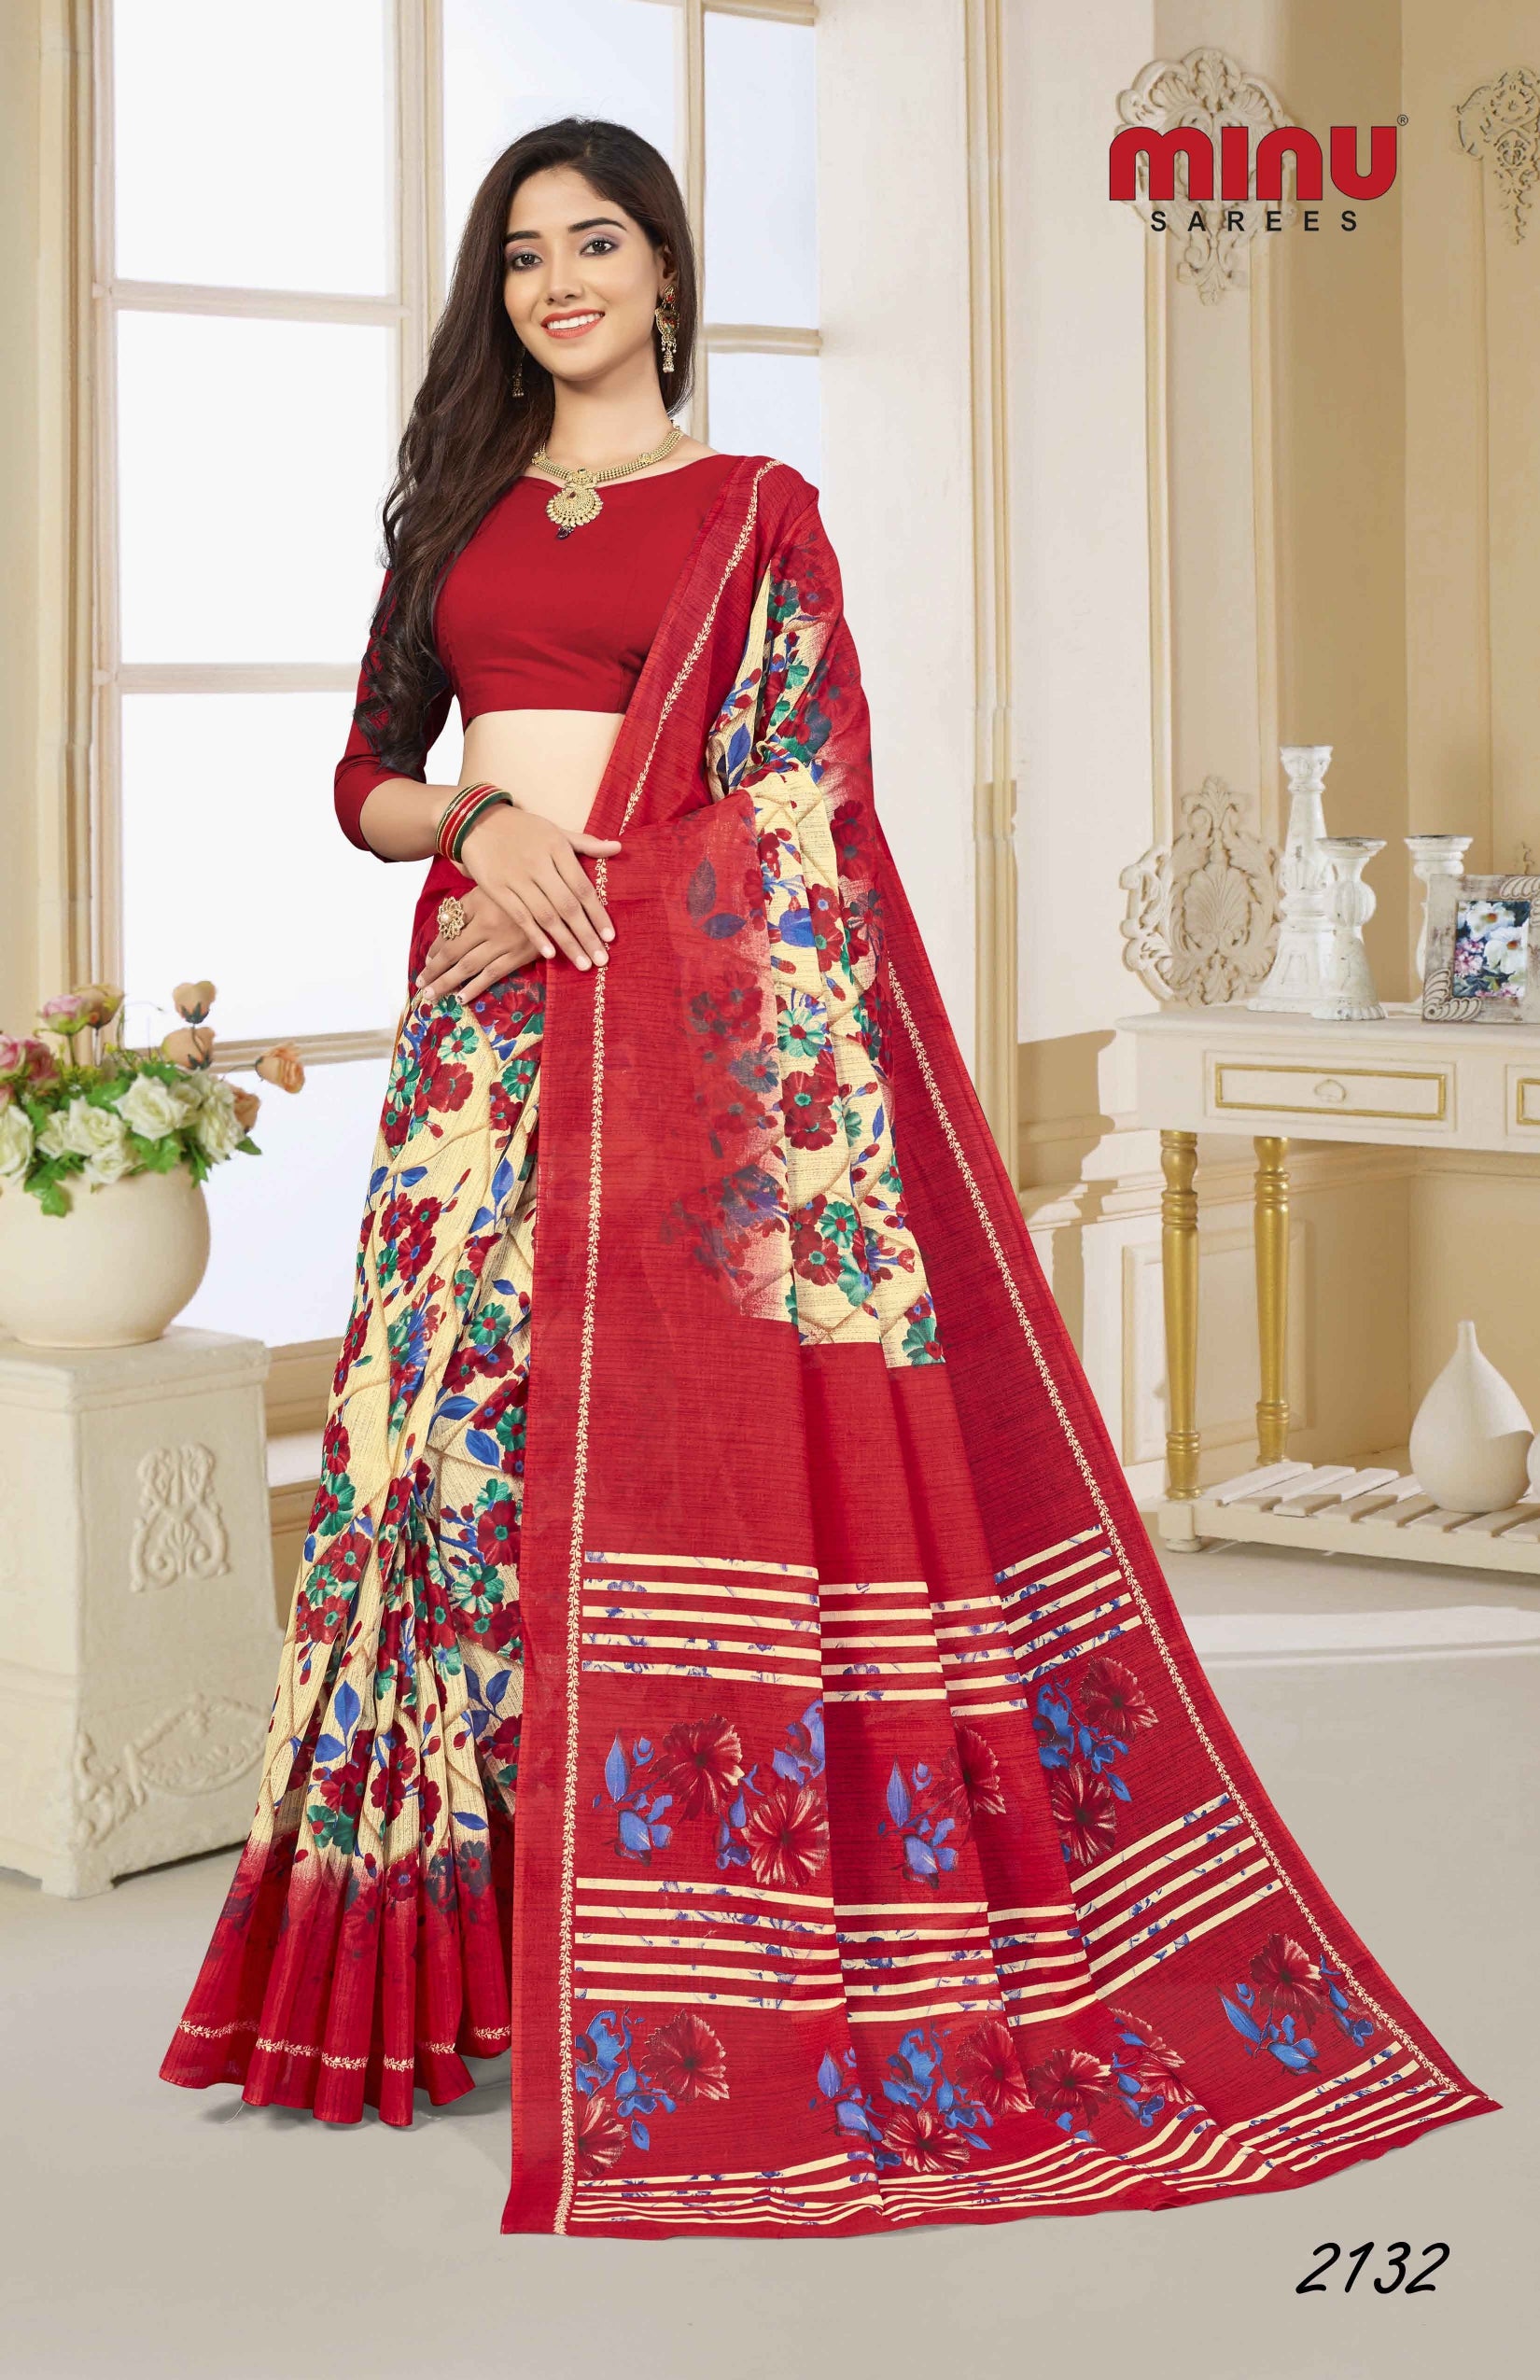 Woman wearing red printed saree designing saree